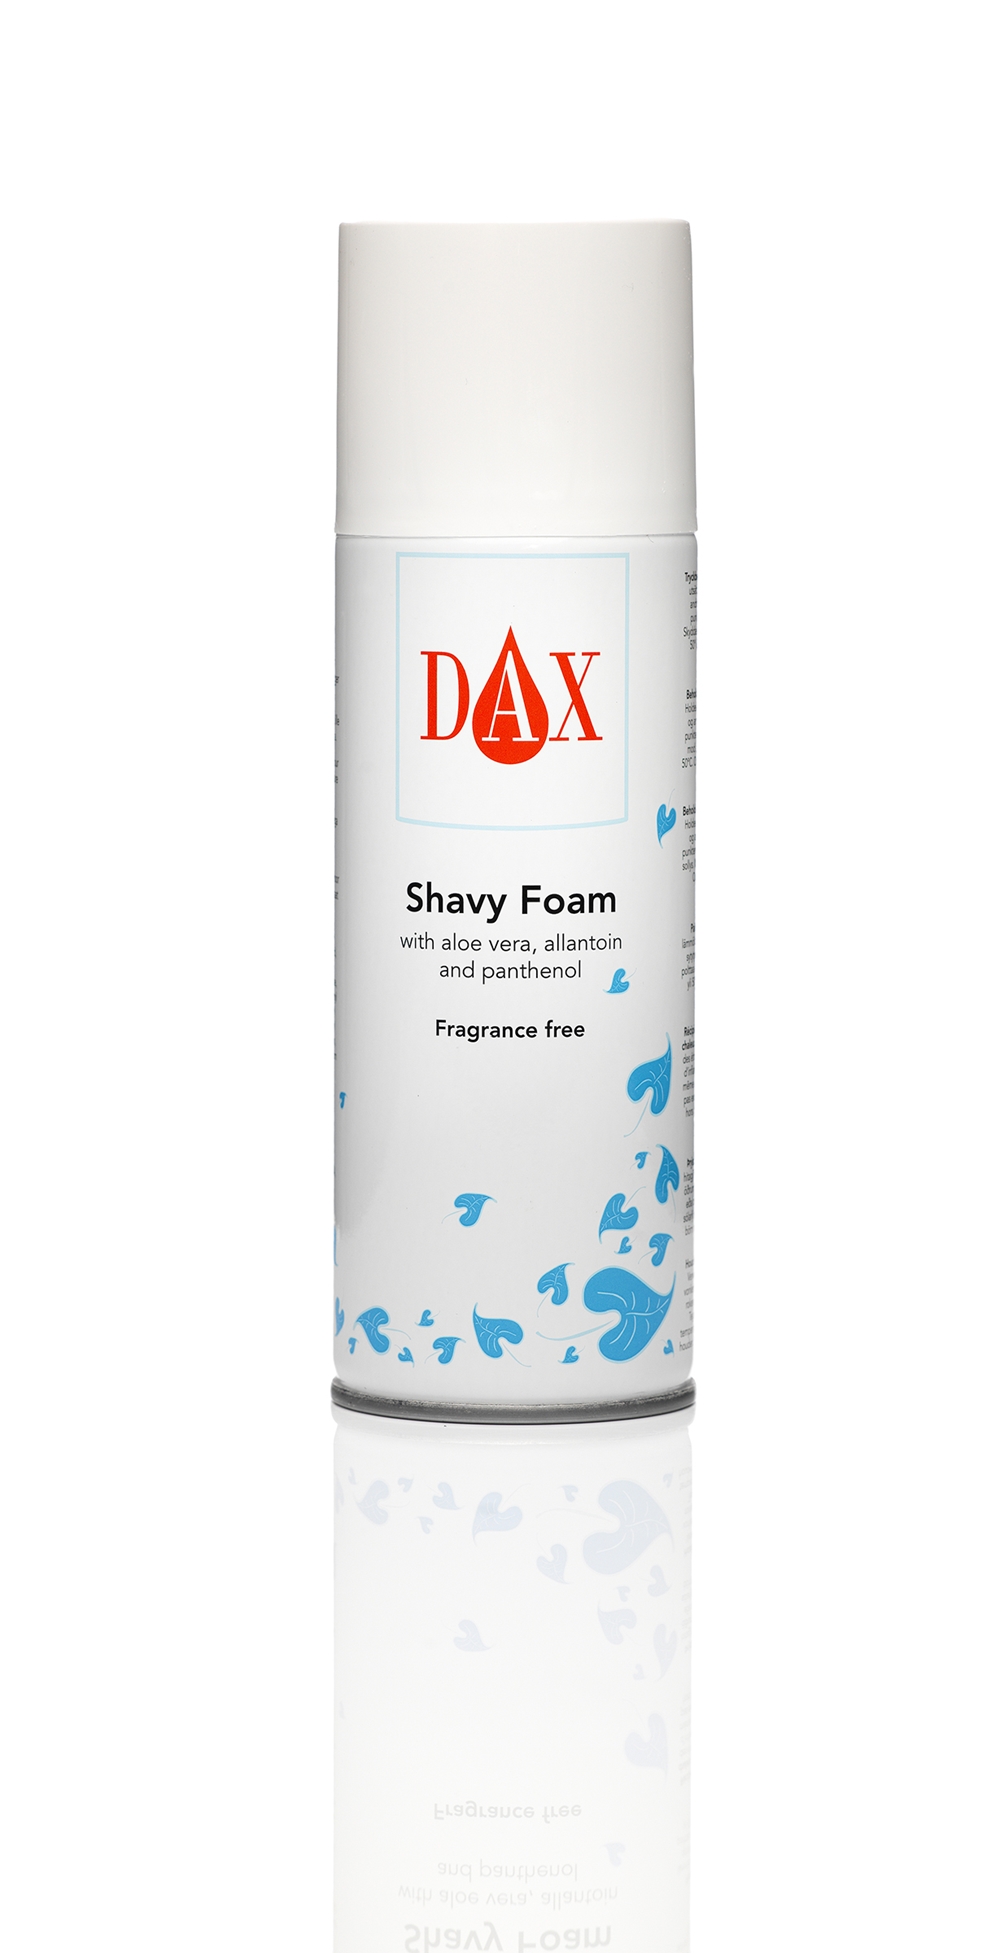 Raklödder Dax Shavy foam - 200ml, oparfymerat